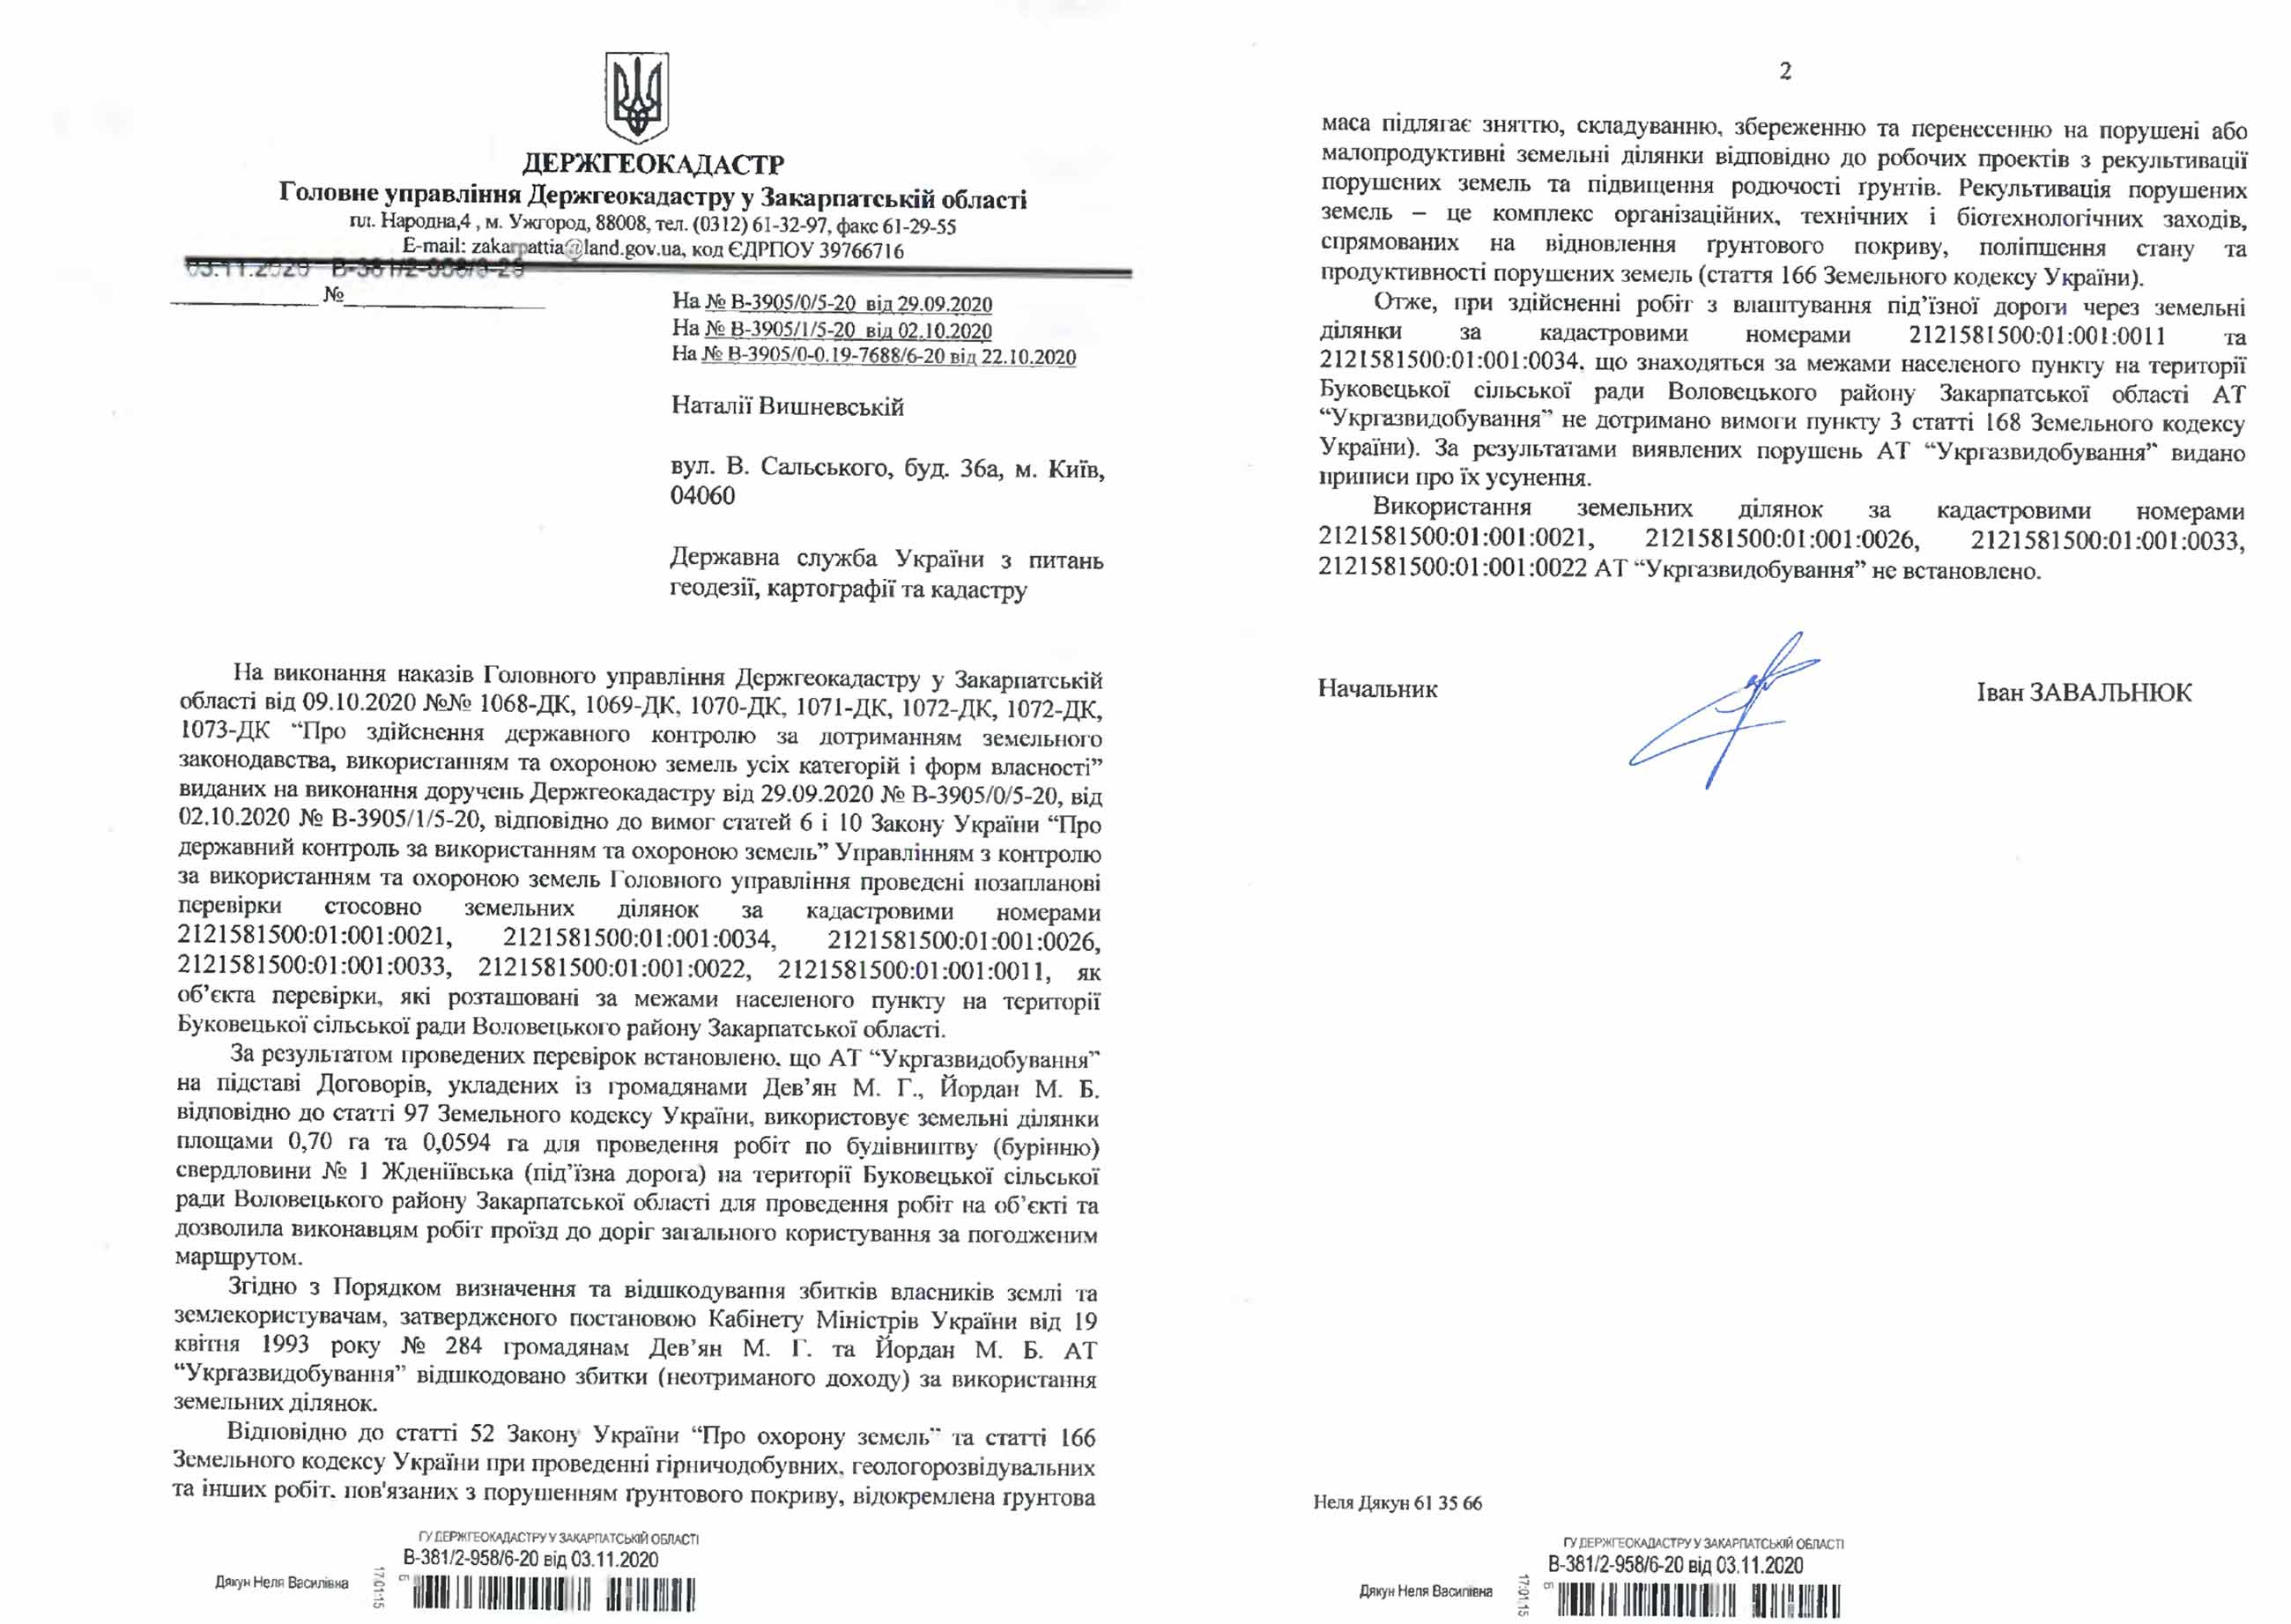 Response of the State Geocadastre in Zakarpattia region: Ukrgazvydobuvannya has agreements for two land plots